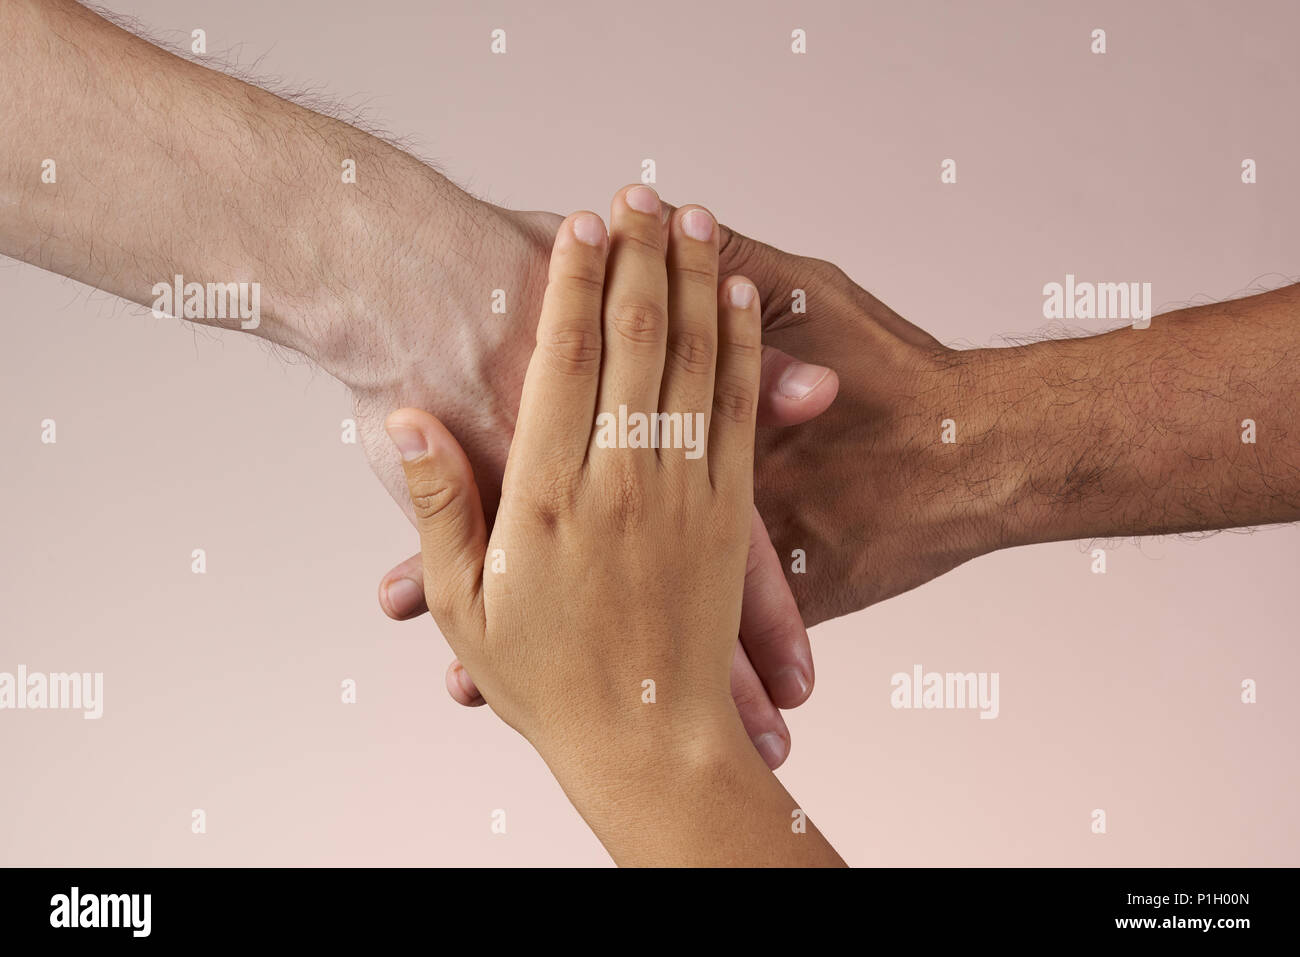 Die Hände zusammen, als Union. Teamarbeit und Einheit Konzept. Stockfoto